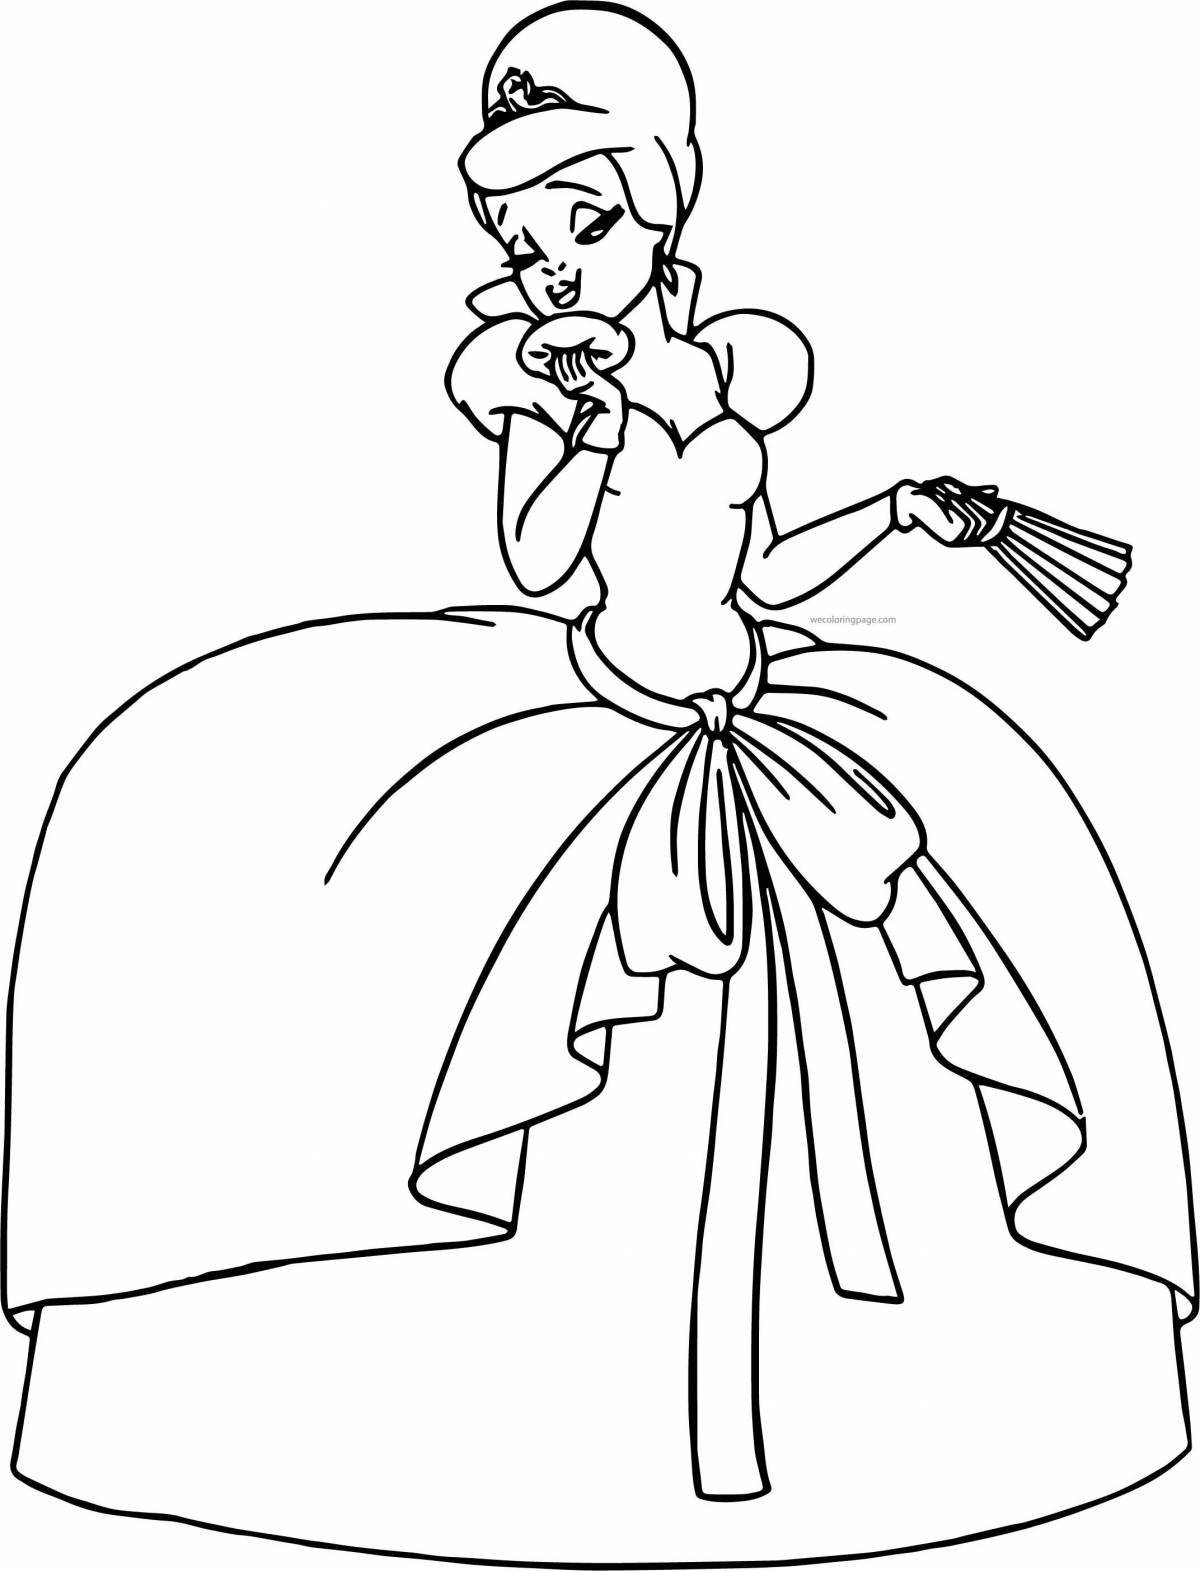 Beautiful princess diana coloring page